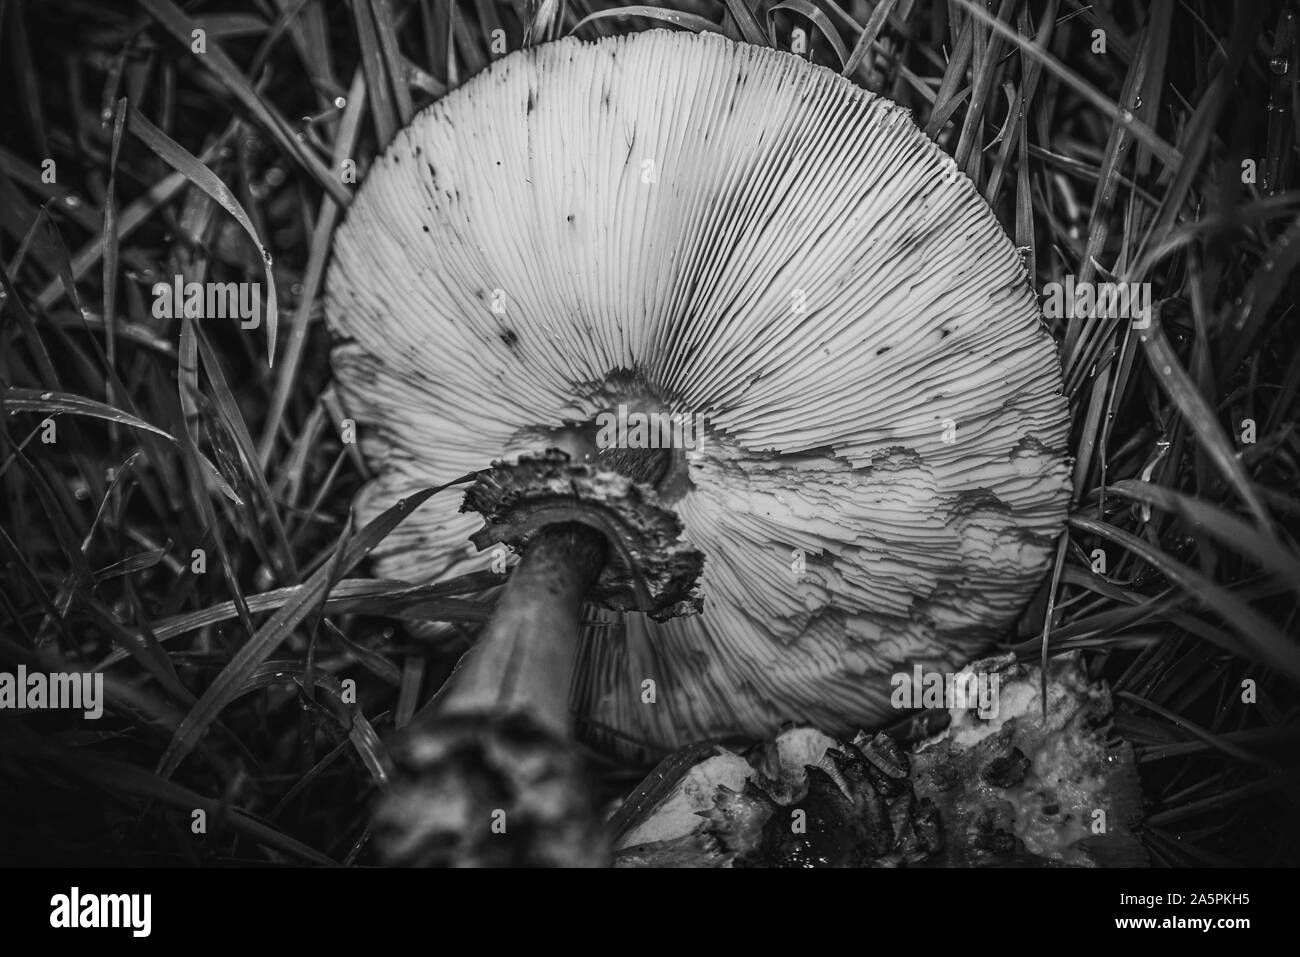 Fungi - Garden Mushroom Stock Photo